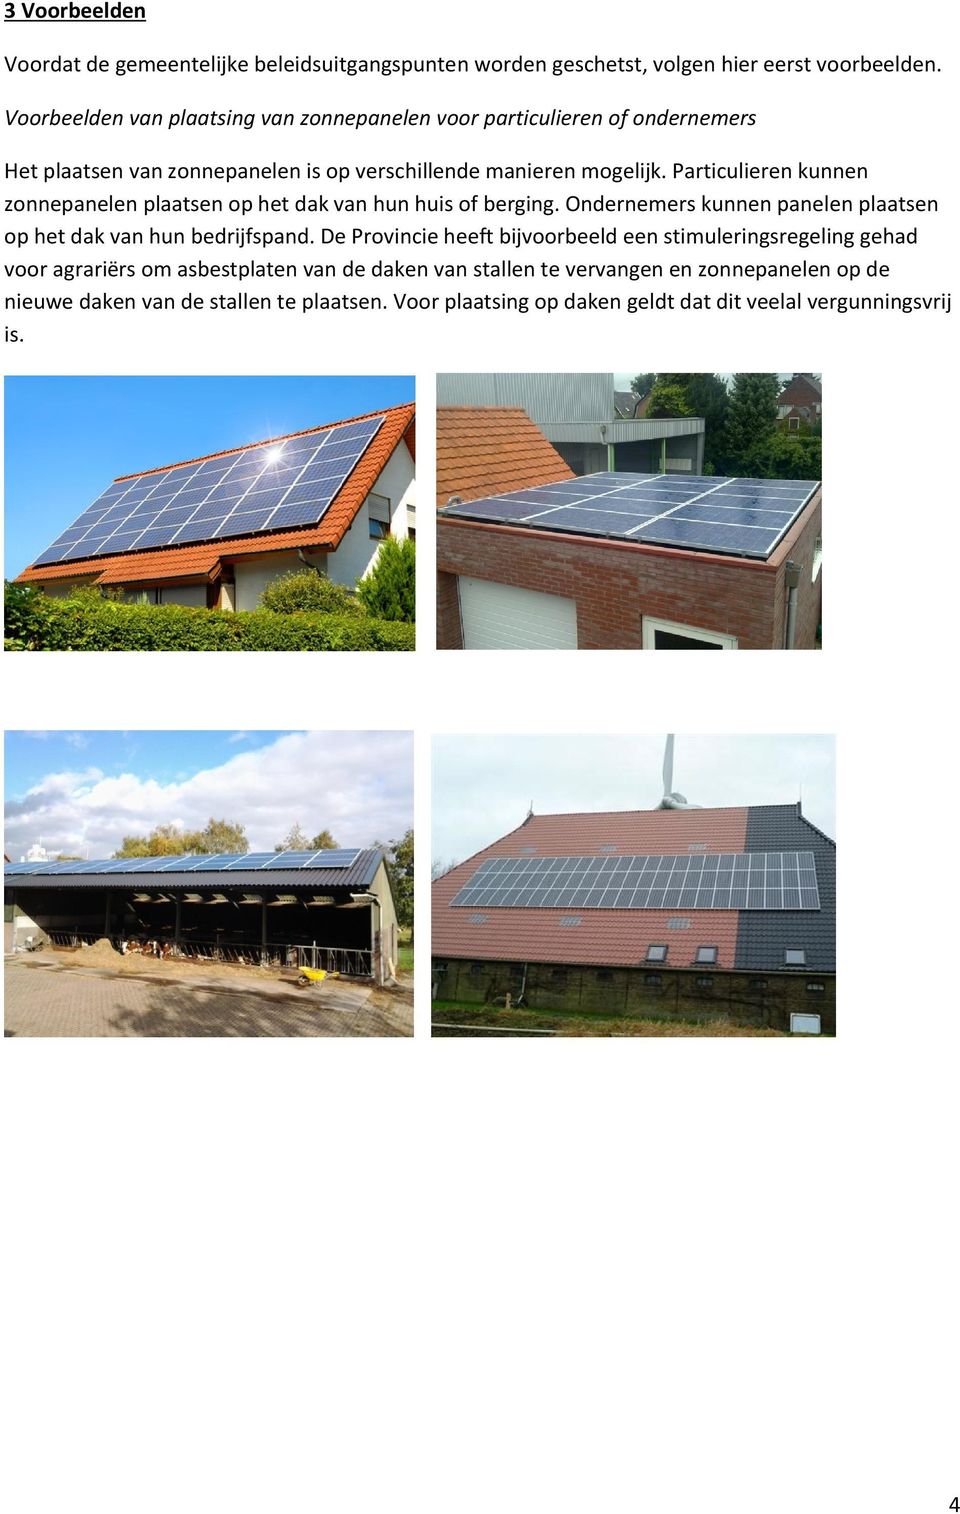 Particulieren kunnen zonnepanelen plaatsen op het dak van hun huis of berging. Ondernemers kunnen panelen plaatsen op het dak van hun bedrijfspand.